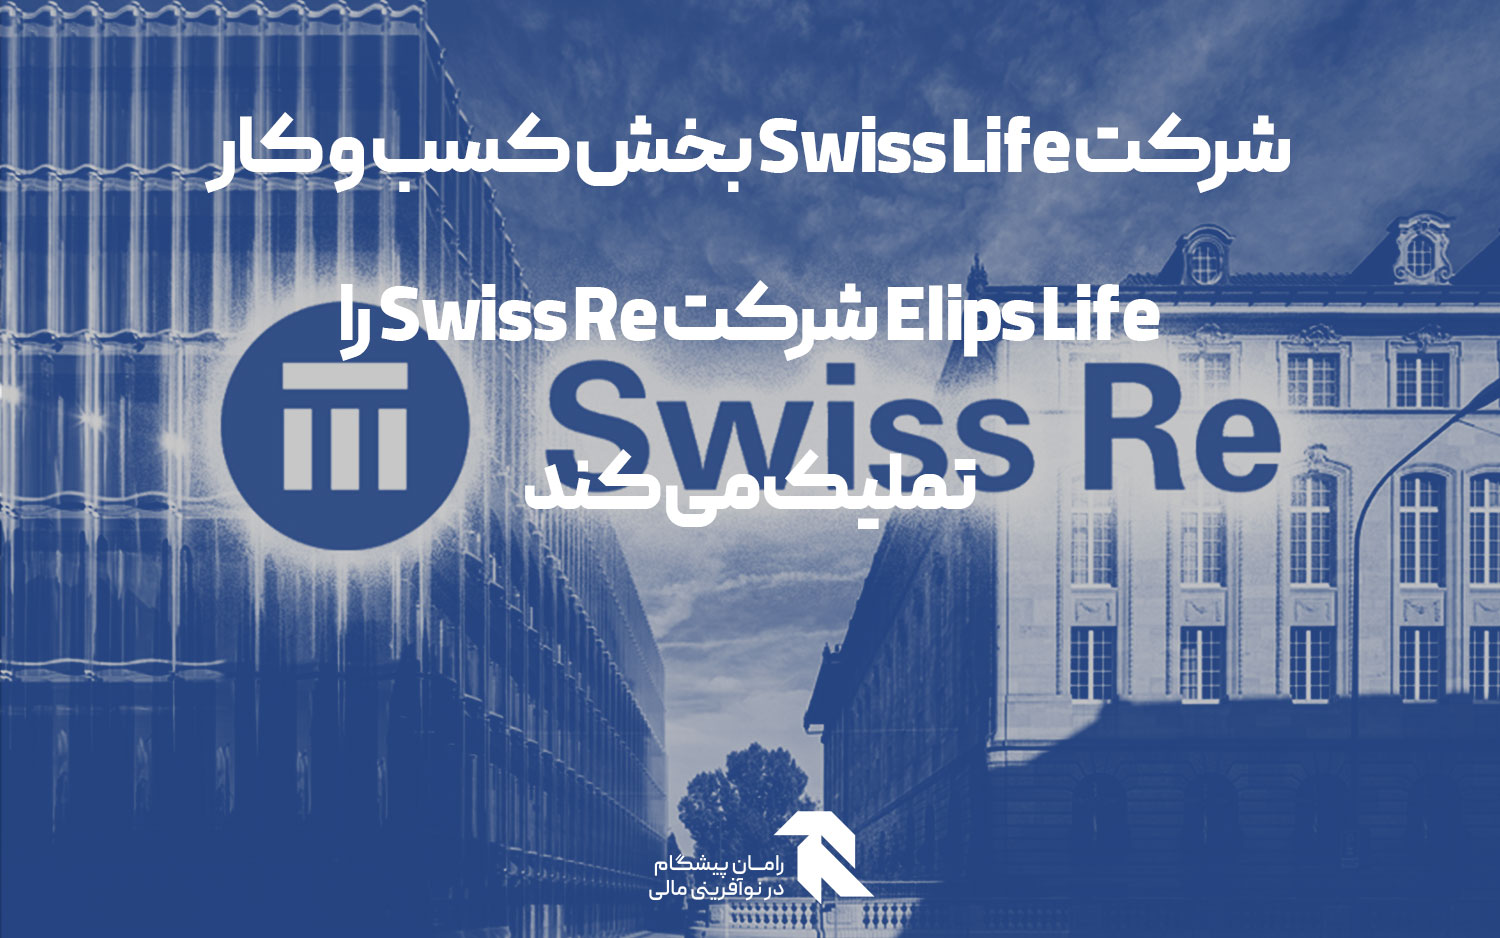 شرکت Swiss Life بخش کسب و کار Elips Life شرکت Swiss Re را تملیک می کند